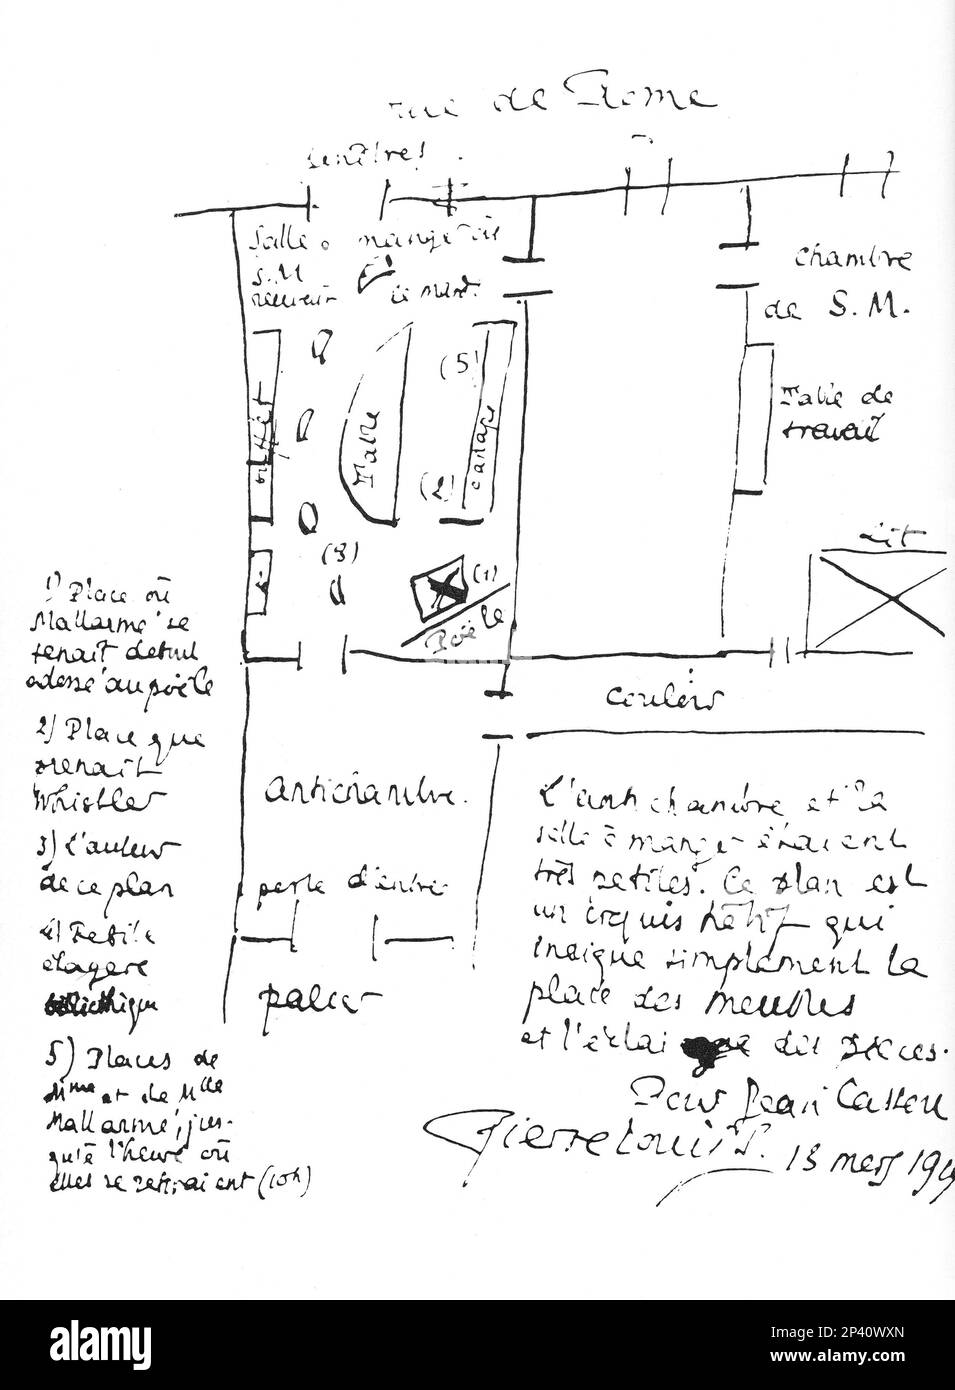 La pianta di appartamento , Rue de Rome , Parigi , del poeta simbolista francese Stéphane Mallarmé ( 1842 - 1898 ) del suo amico il poeta PIERRE LOUYS . - Mallarme' - Mallarme - POETA - POESIA - LETTERATO - LETTERATURA - POESIA - SIMBOLISMO - SIMBOLISTA - piana - appartamento - autografo - autographe - firma - prima ---- Archivio GBB Foto Stock